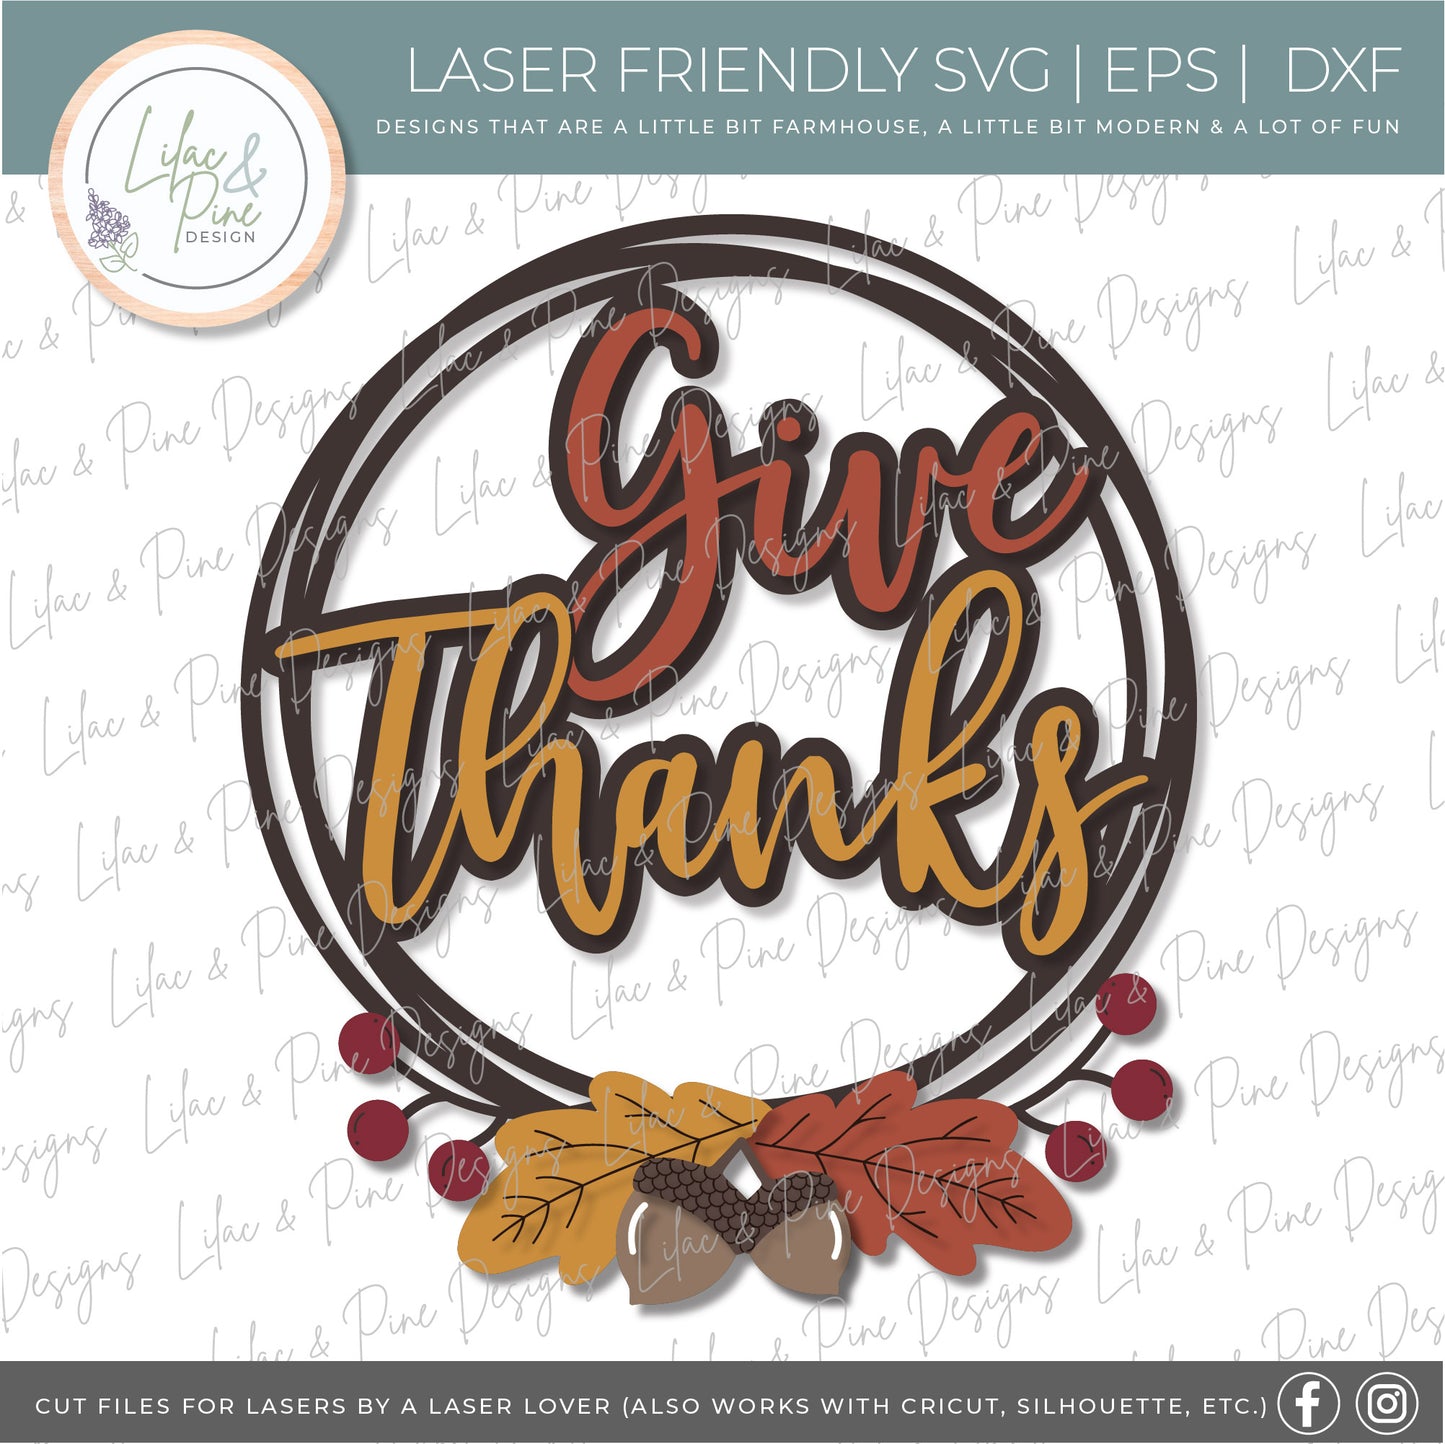 Give Thanks sign SVG, Fall sign SVG, Thanksgiving decor, Thanksgiving wreath SVG, fall leaves svg, acorn svg, Glowforge Svg, laser cut file